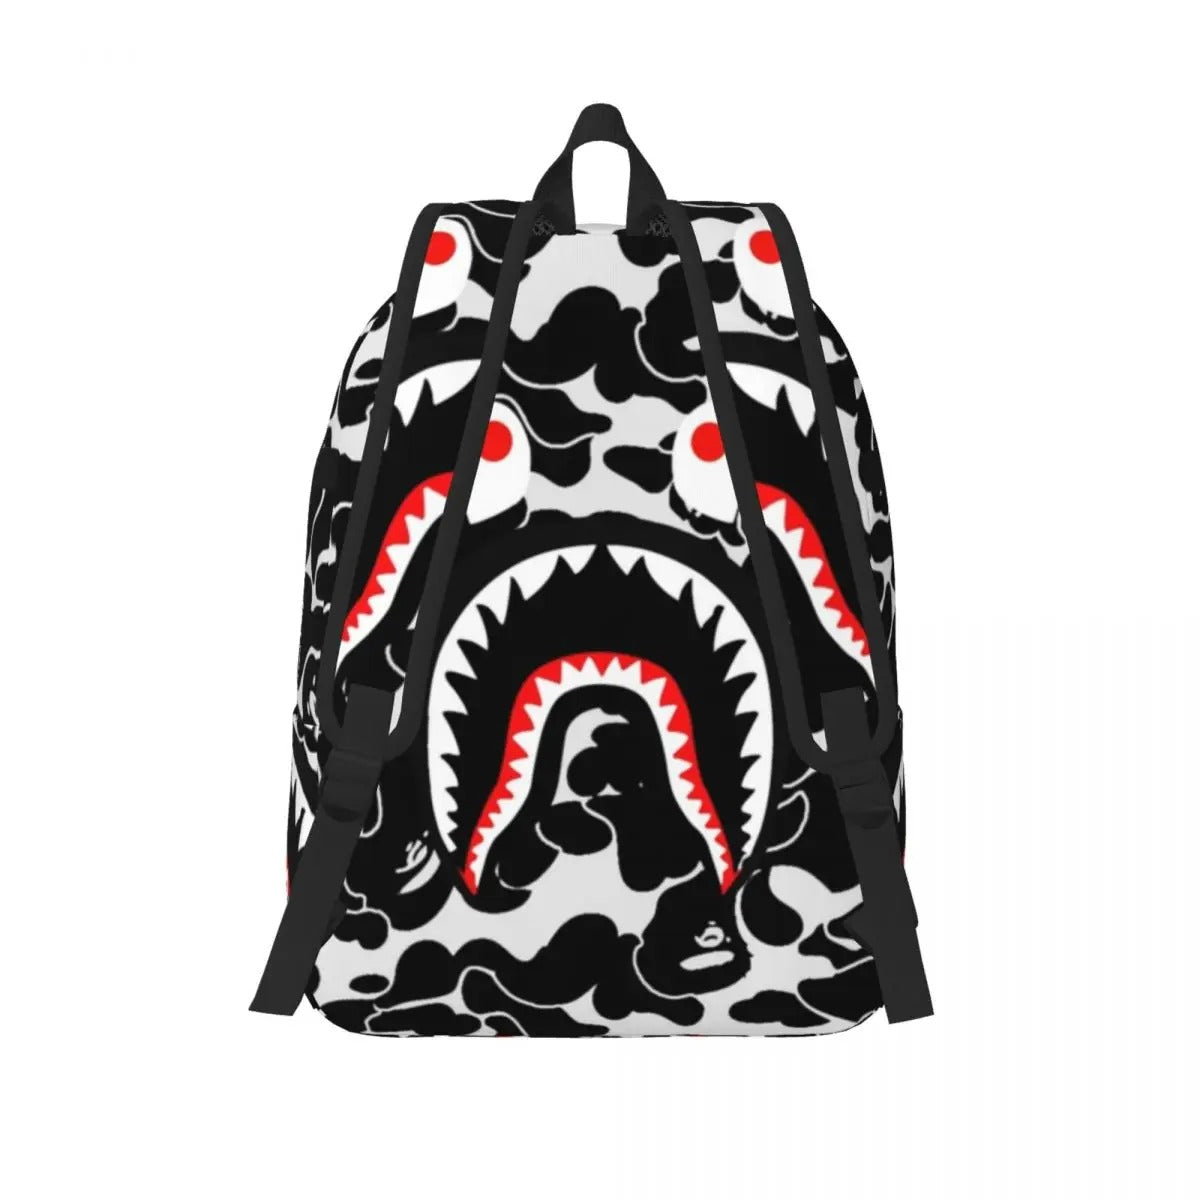 Shark Teeth Backpack